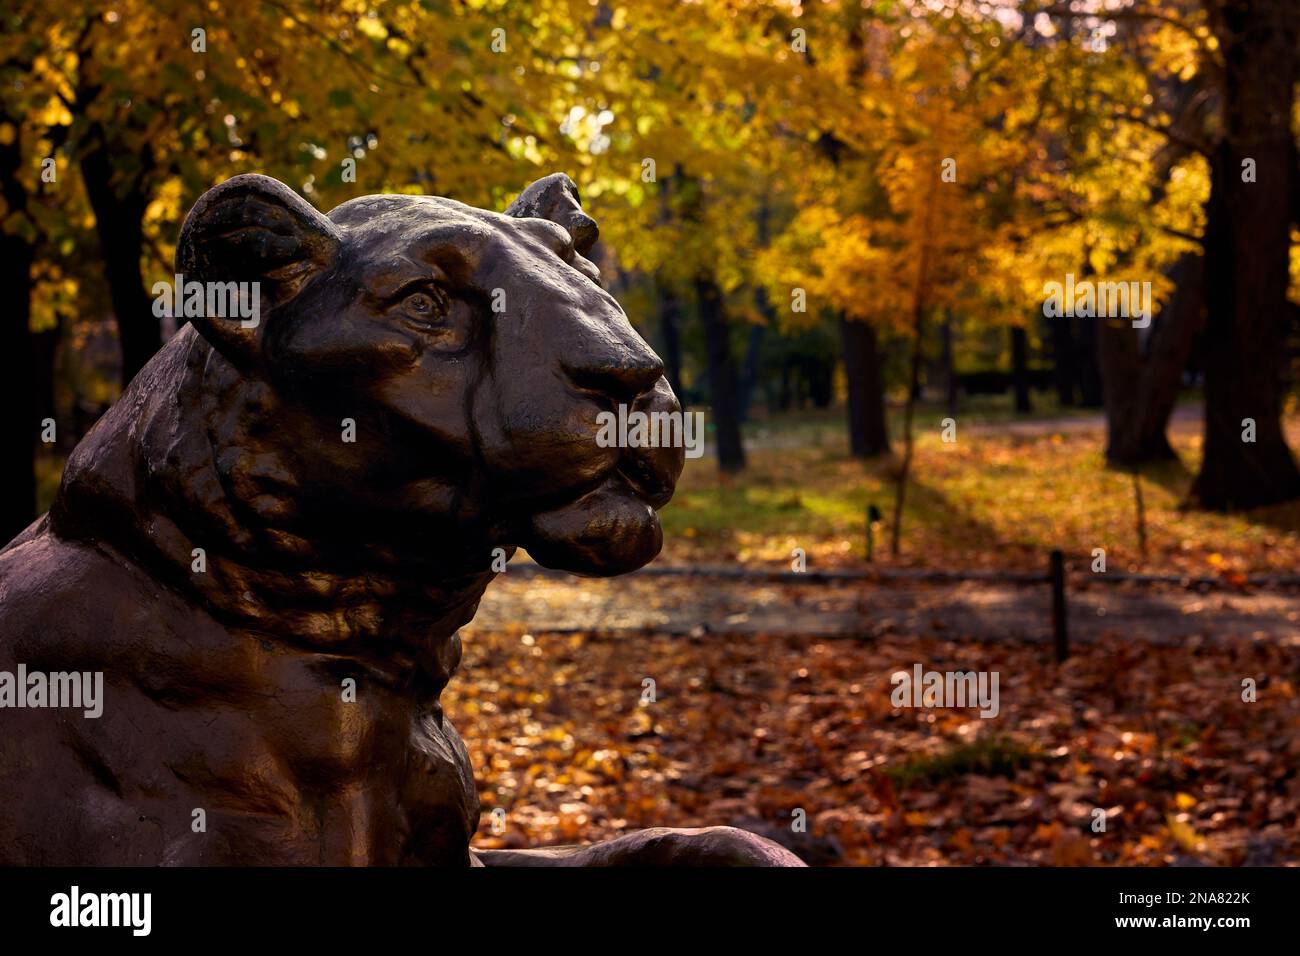 La testa del monumento al leone nel parco cittadino sullo sfondo del fogliame giallo autunnale. Odessa Ucraina. Foto Stock